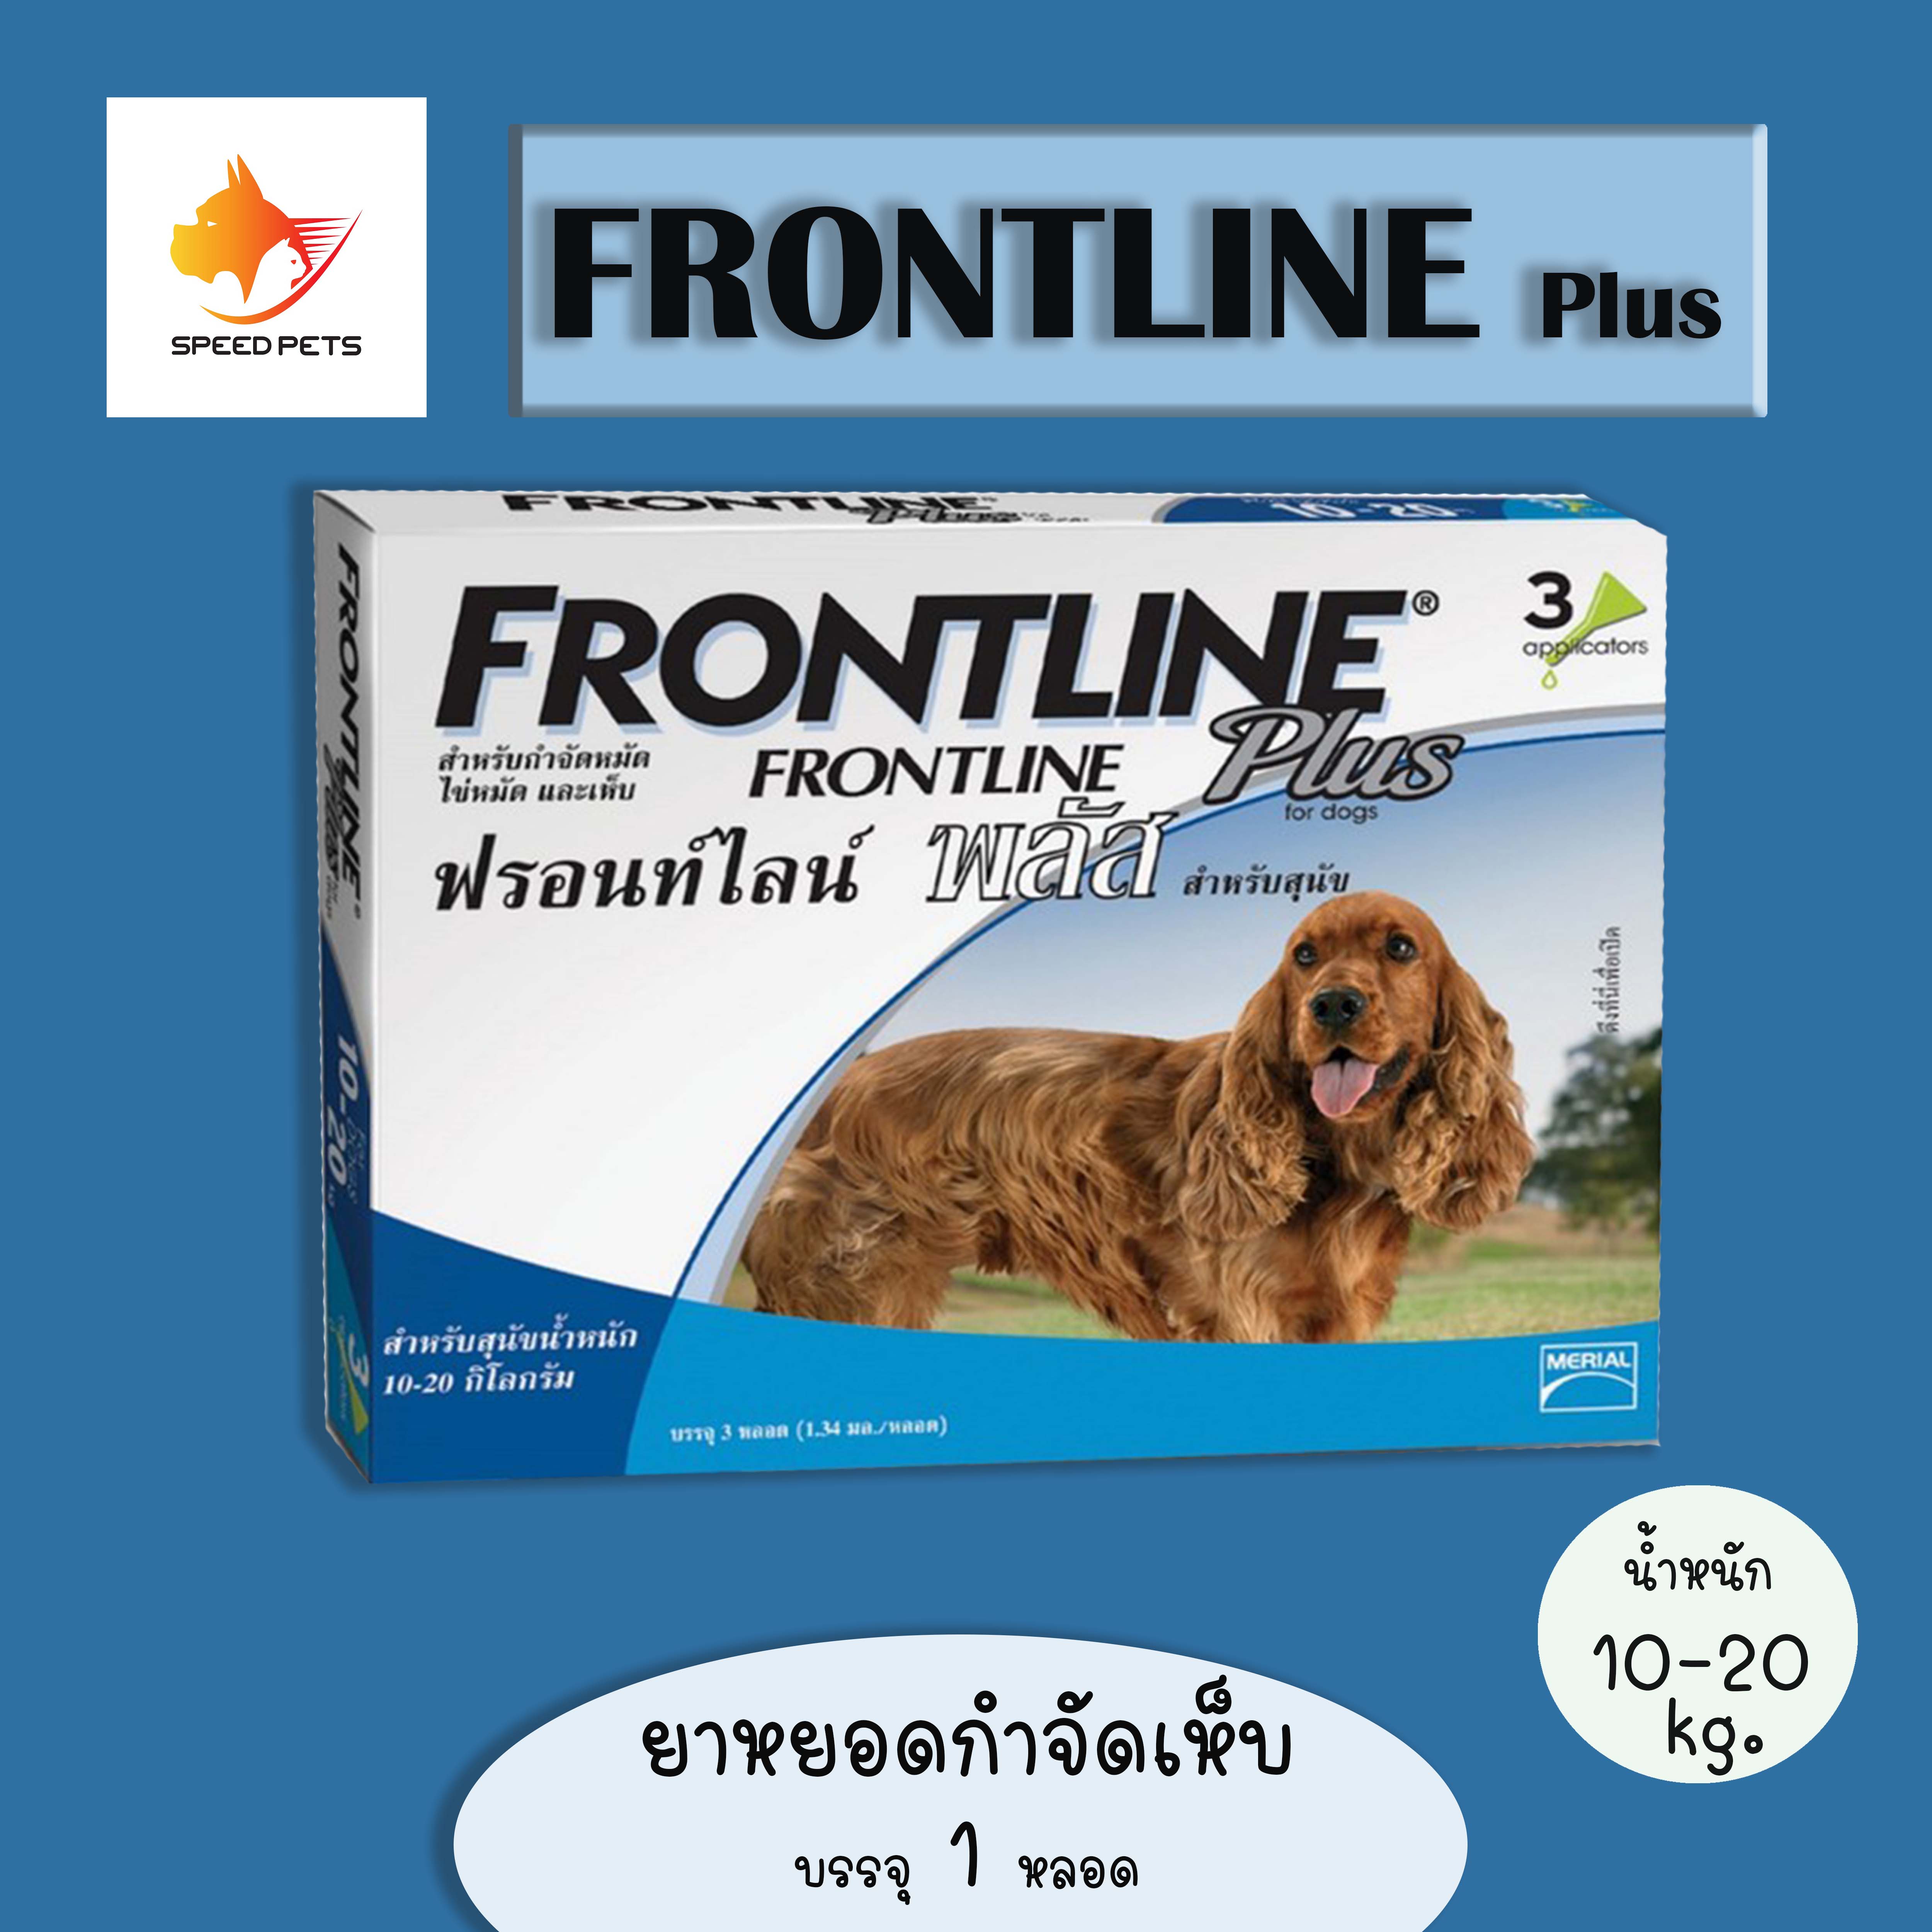 Frontline Plus Dog ฟร้อท์ไลน์ ใช้หยอดกำจัดเห็บ สำหรับหยอดฆ่าเห็บ หยอดหลังคอ ใช้ฆ่าเห็บ กำจัดเห็บ สุนัข น้ำหนัก 10-20 Kg  X1 หลอด